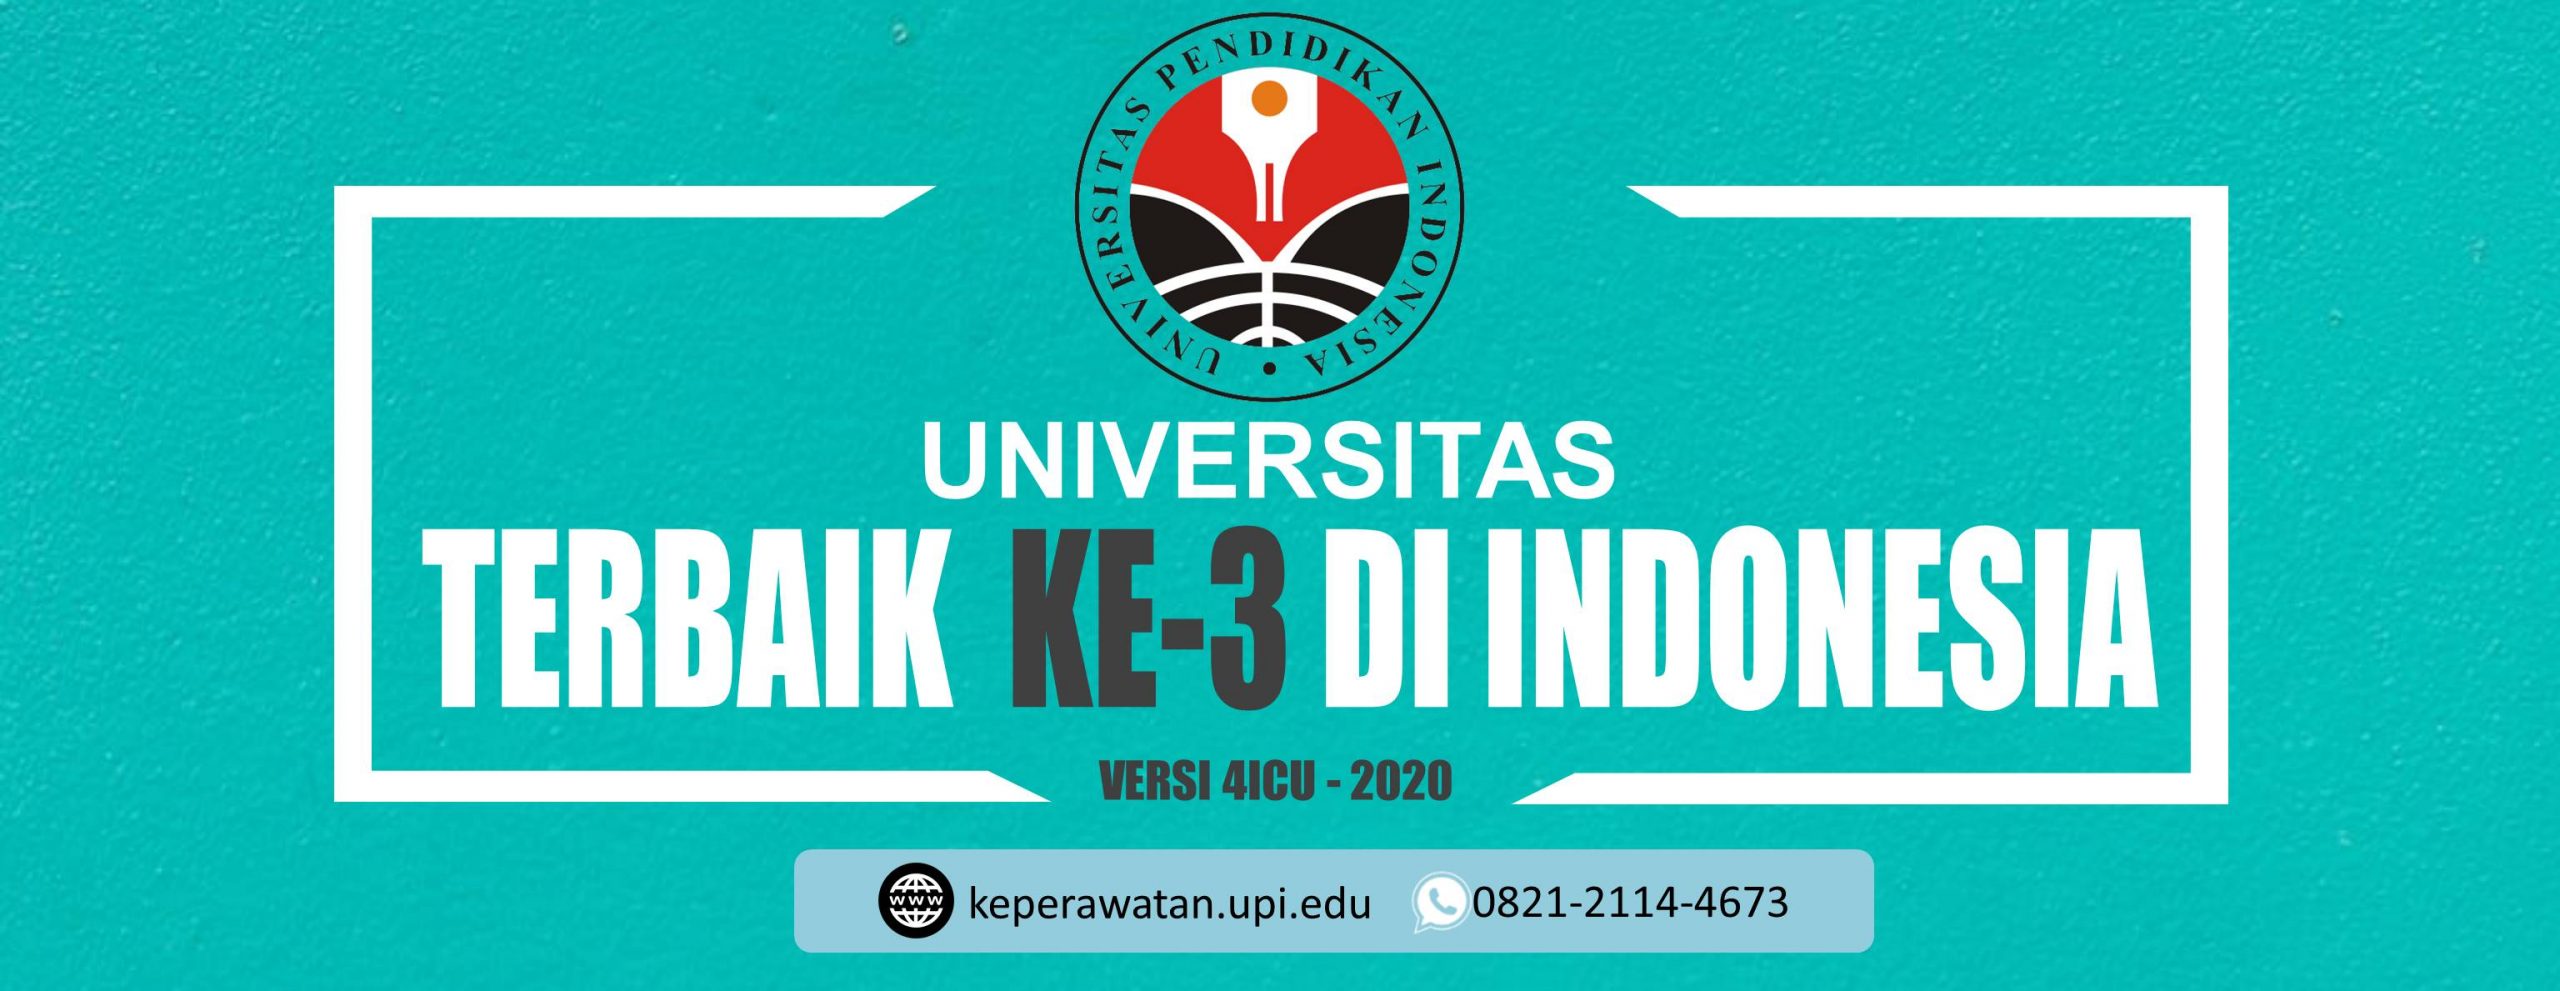 UPI peringkat Ke-3 universitas terbaik Indonesia 2020 versi 4ICU